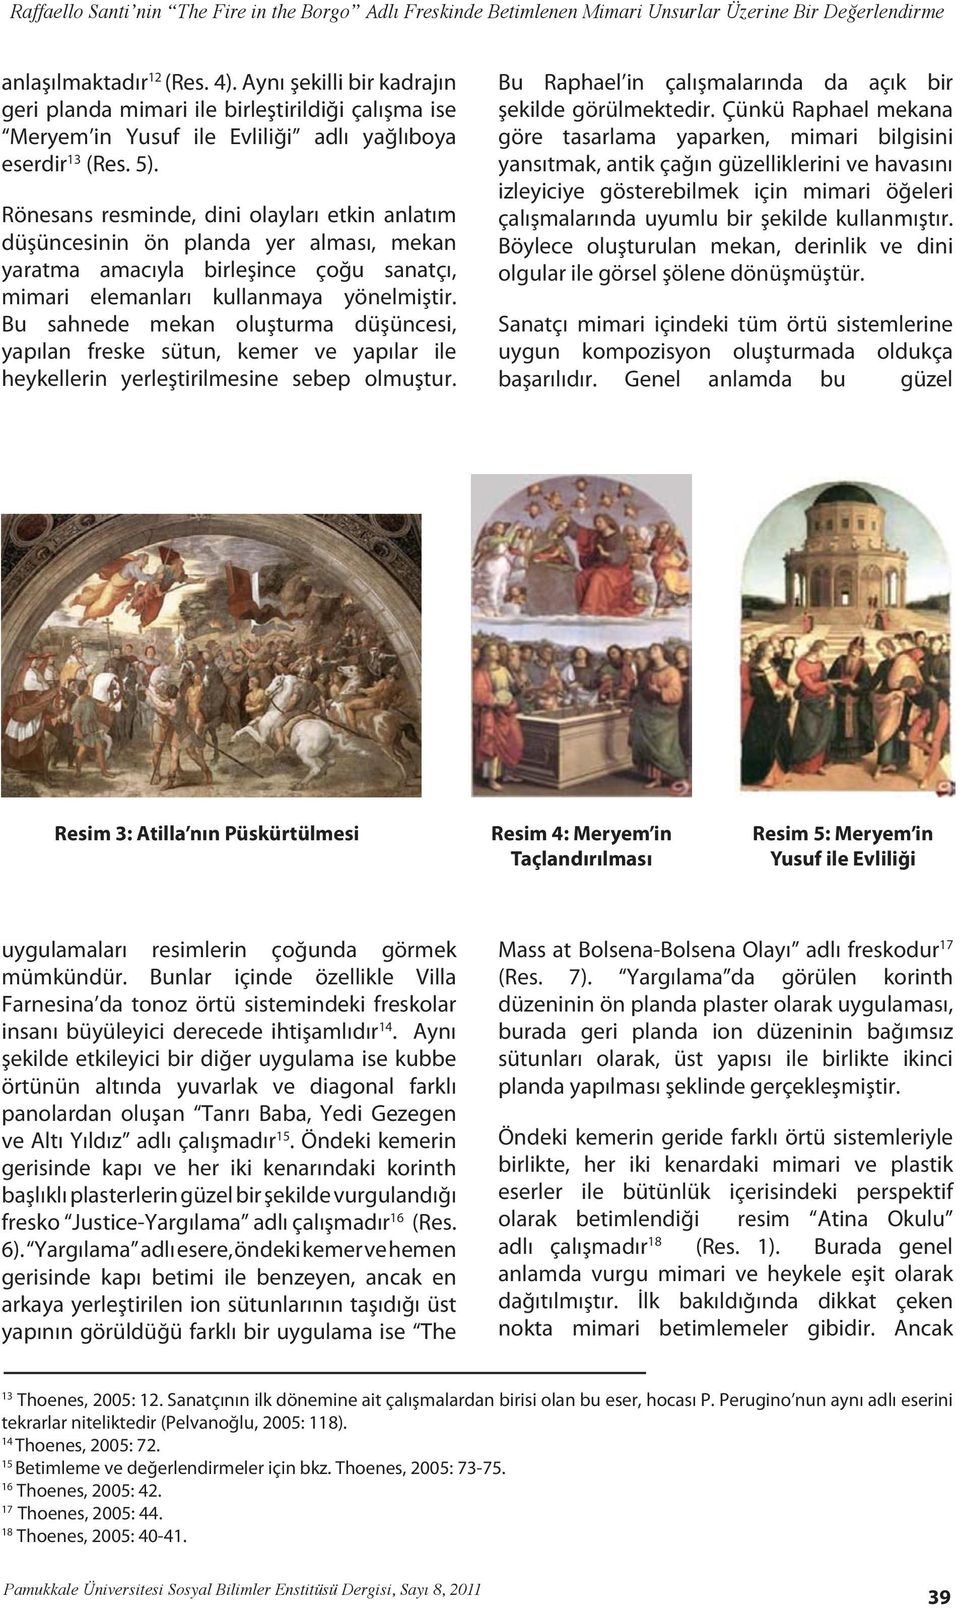 Bu sahnede mekan oluşturma düşüncesi, yapılan freske sütun, kemer ve yapılar ile heykellerin yerleştirilmesine sebep olmuştur. Bu Raphael in çalışmalarında da açık bir şekilde görülmektedir.